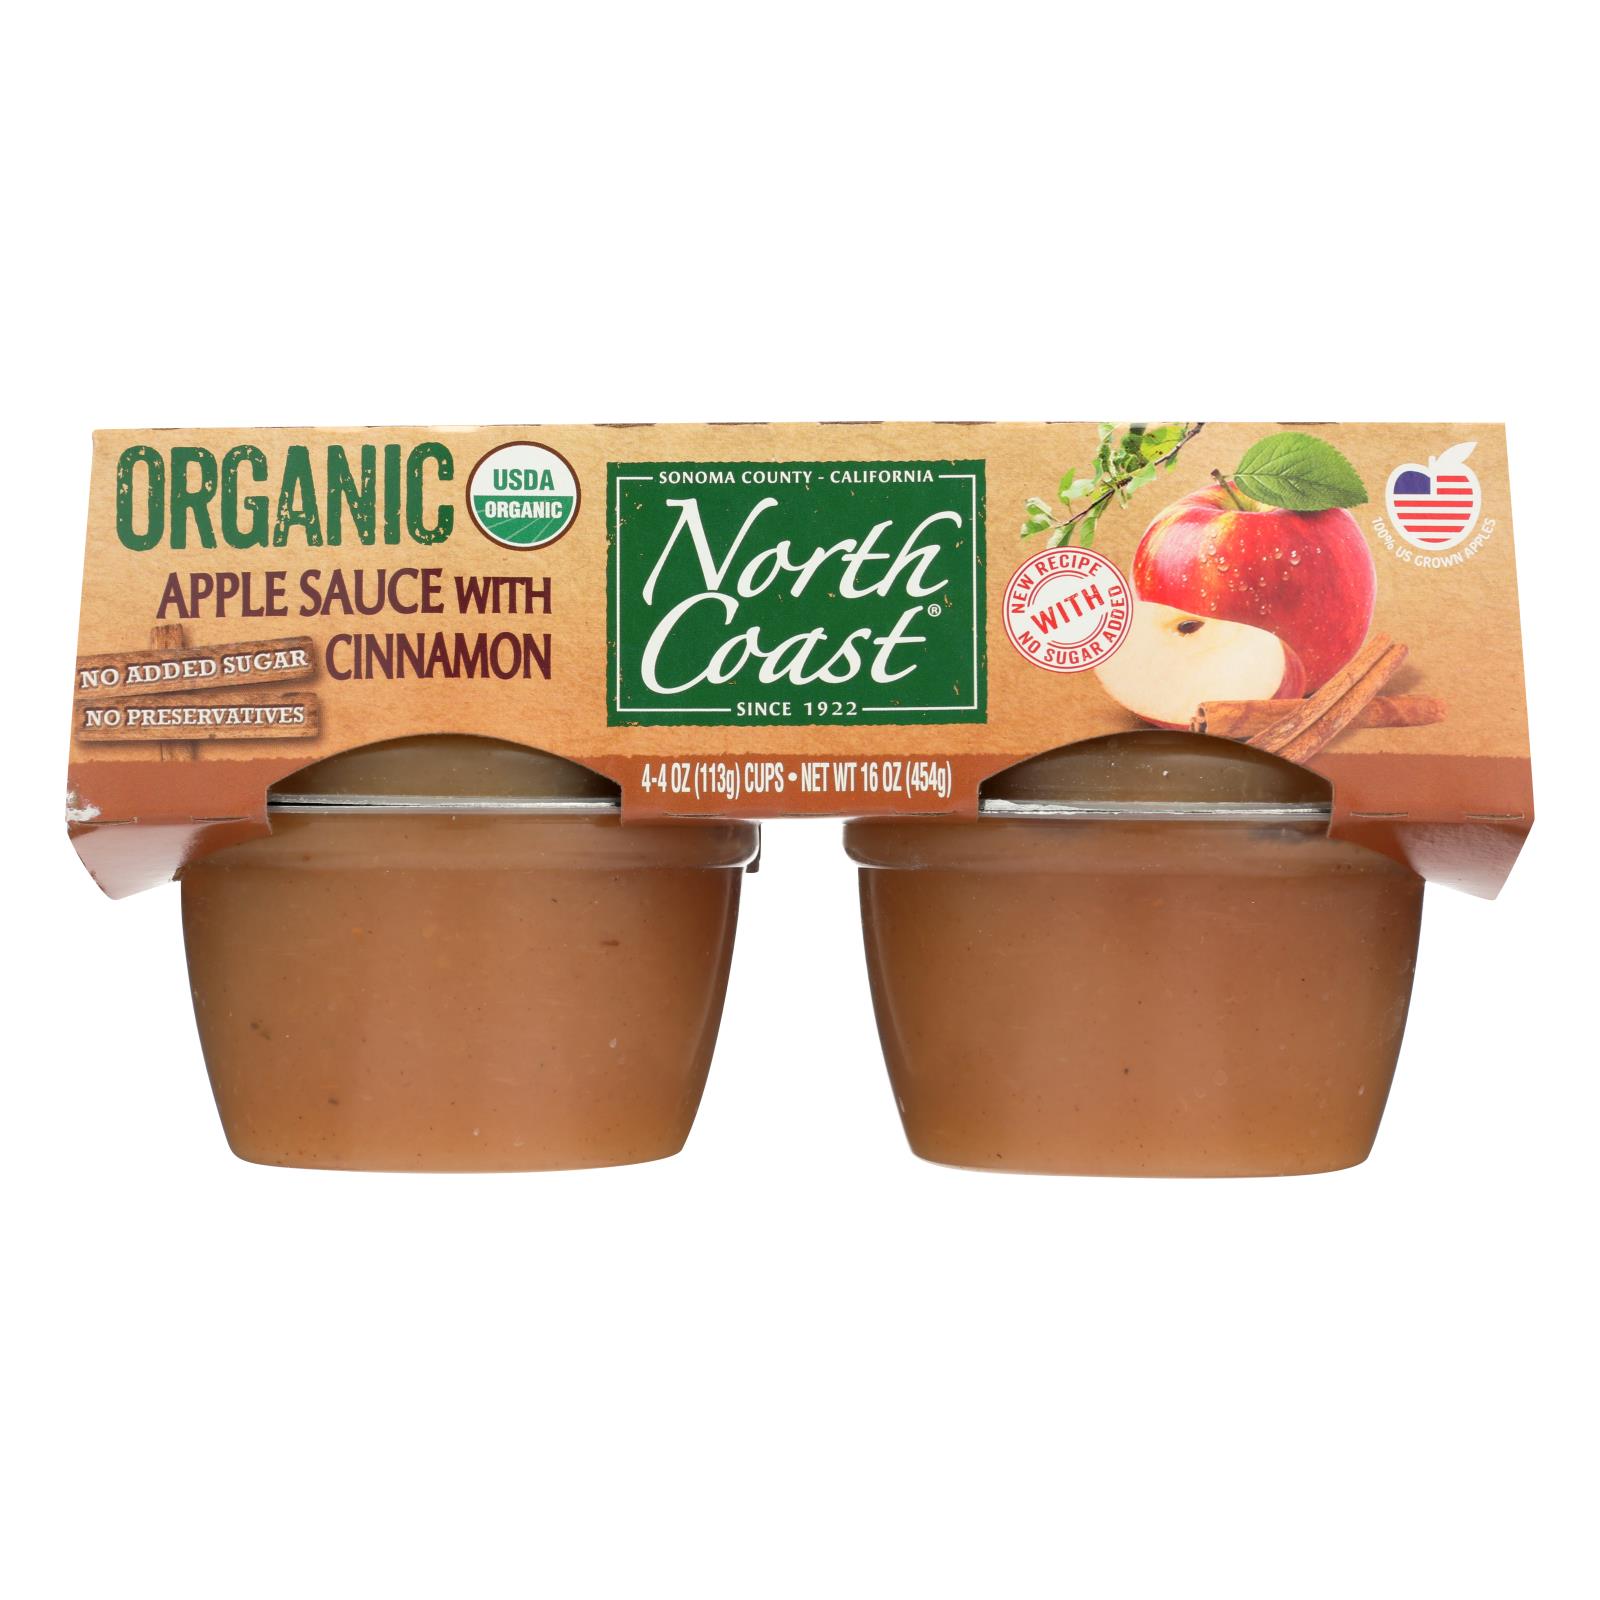 North Coast Organic Apple Sauce - 12개 묶음상품 - 4/4 OZ